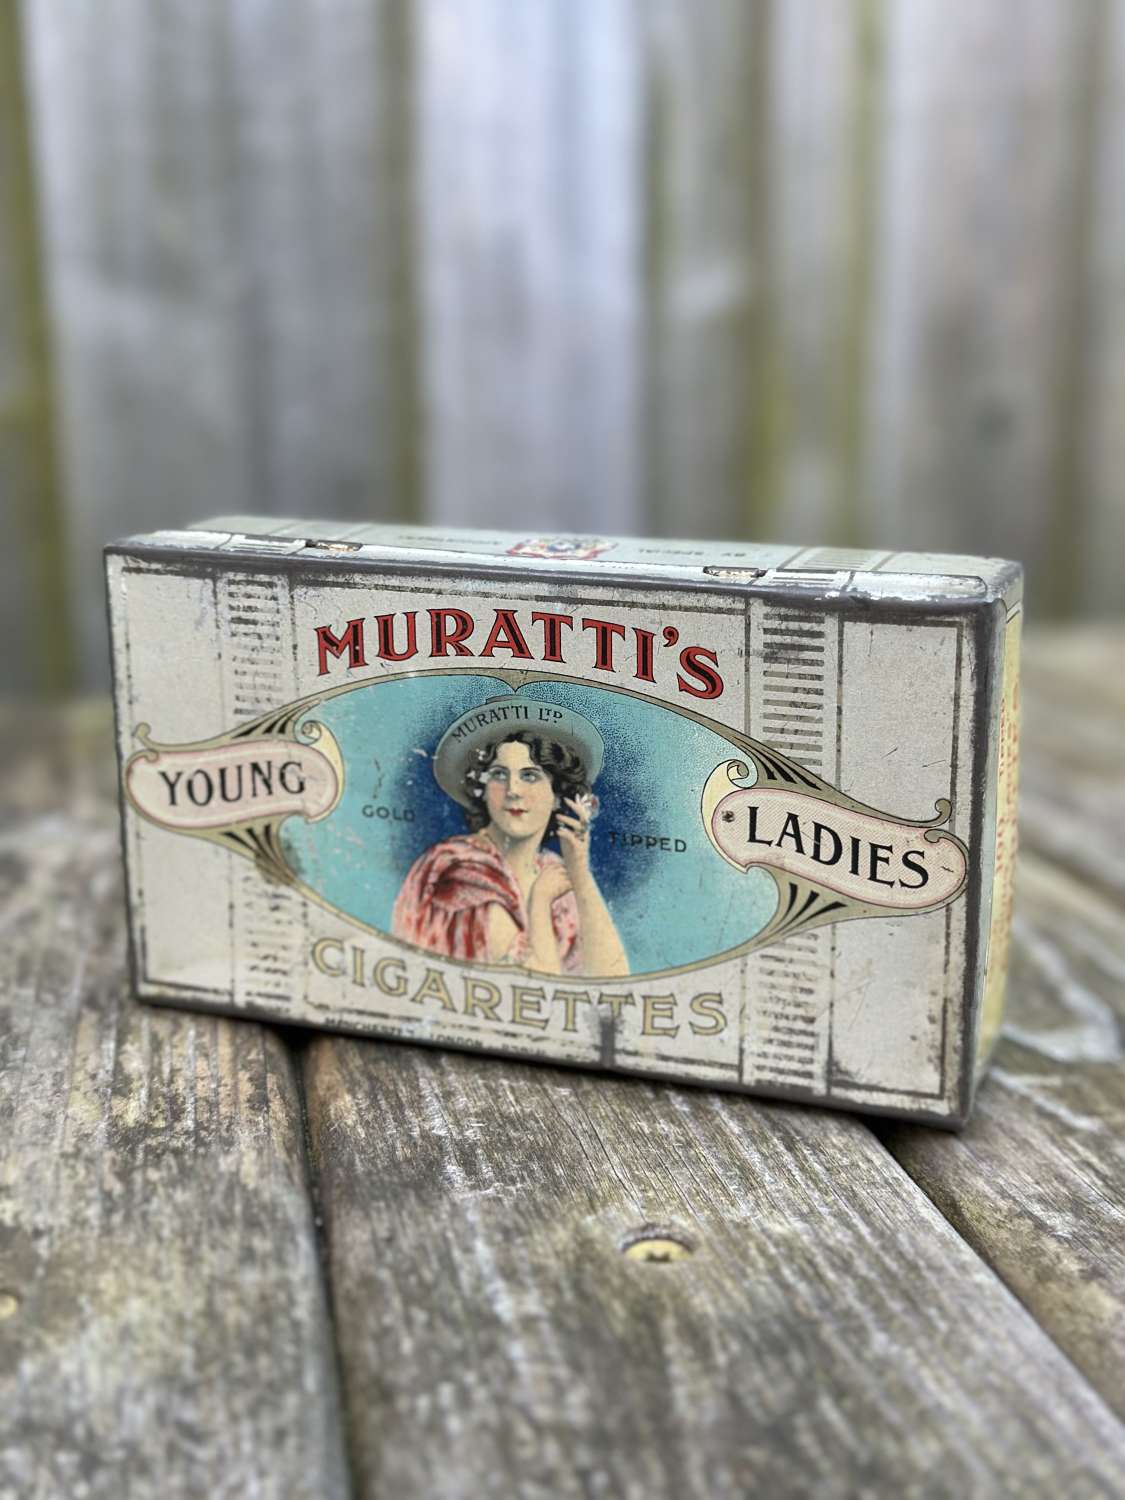 Unusual murattis lady cigarette tin